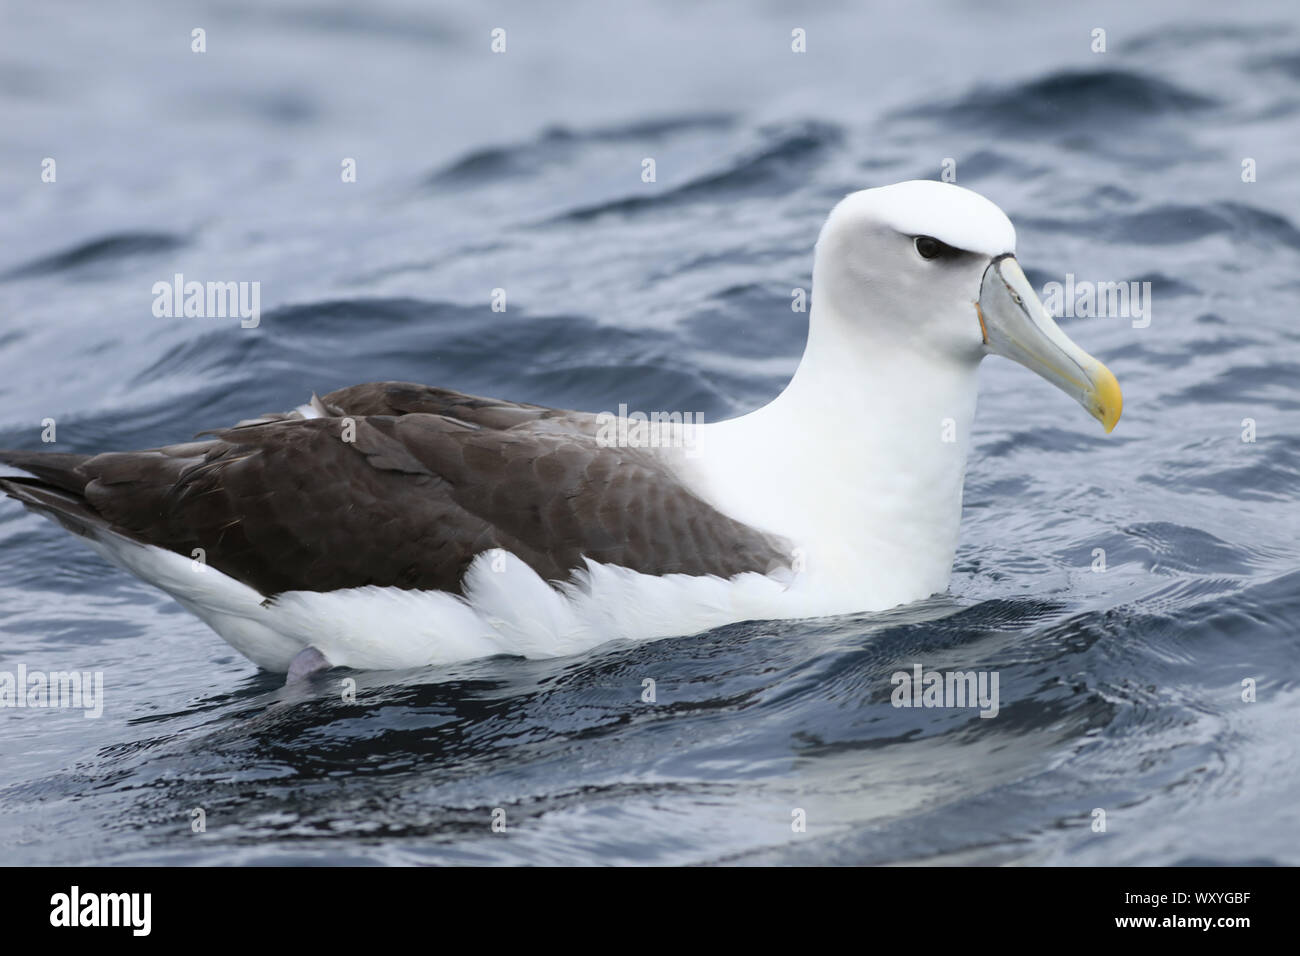 Un albatros à cape blanche, Thalassarche steadi, sur l'eau Banque D'Images